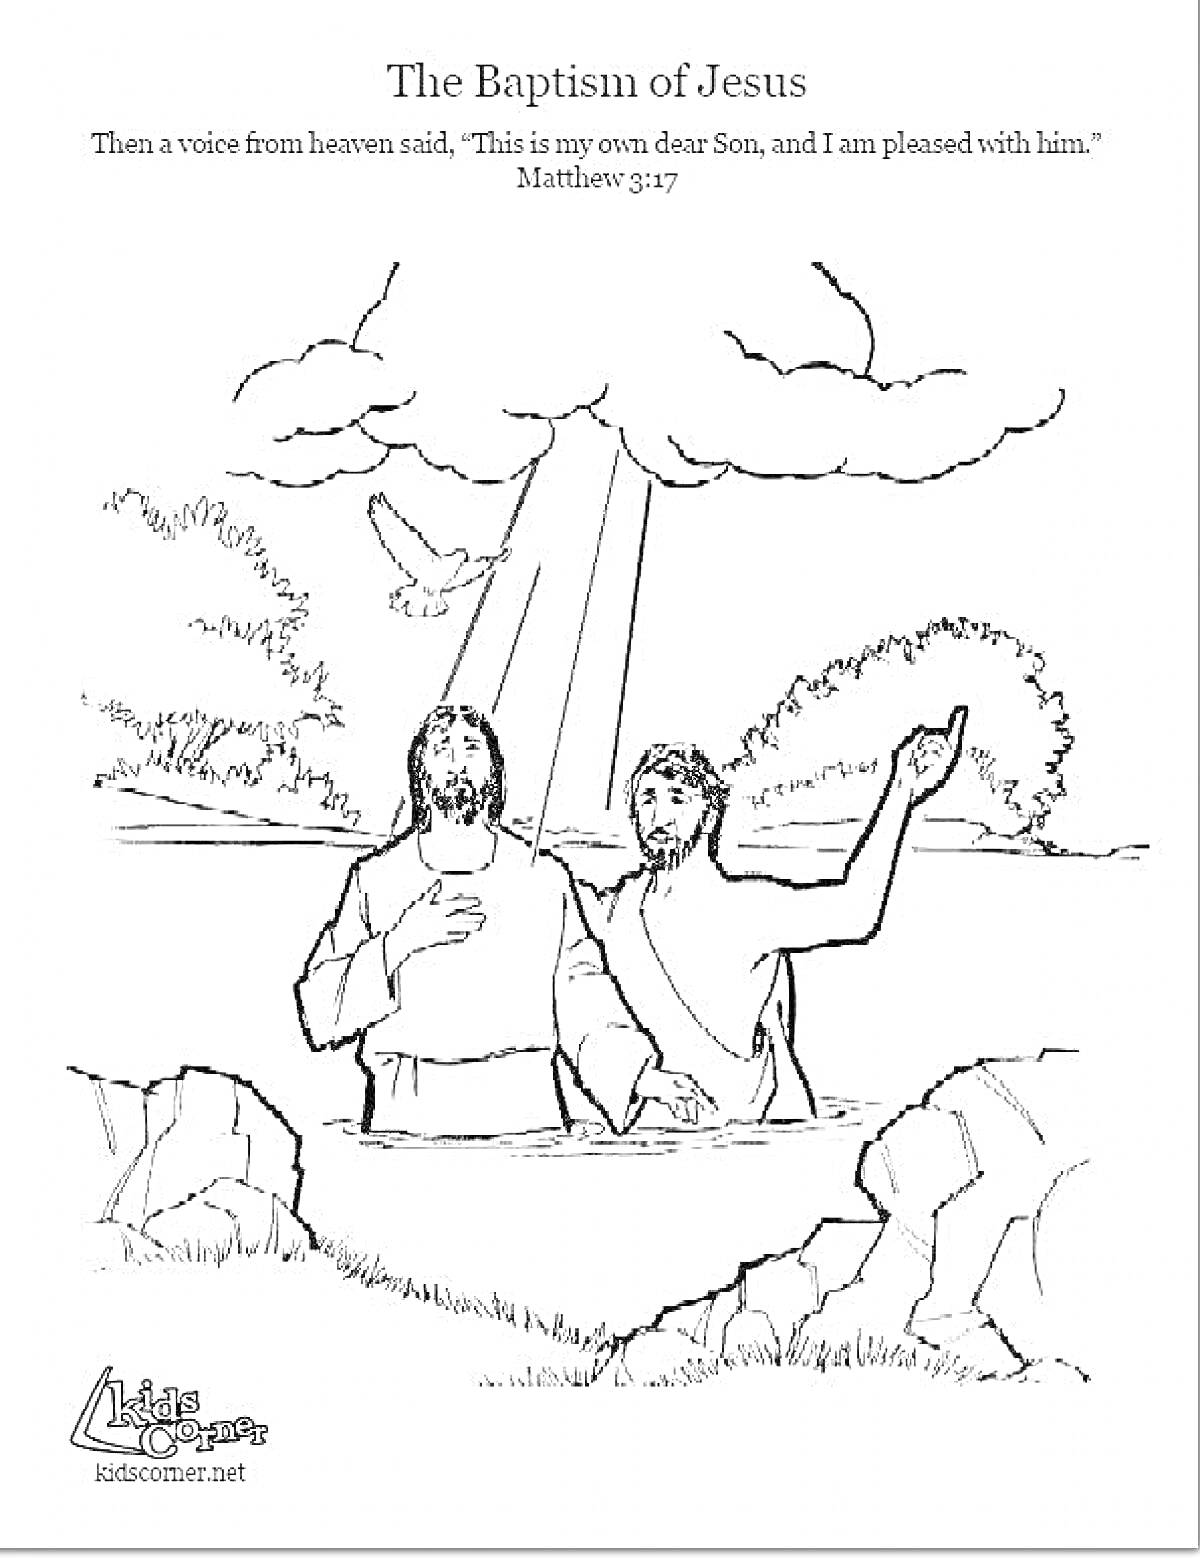 Крещение Господне. На рисунке изображены два мужчины, стоящие по пояс в воде, один из которых крестит другого. Над ними летит голубь, символизирующий Святого Духа. Вдали видны деревья и кусты. Через облака проходят лучи света.